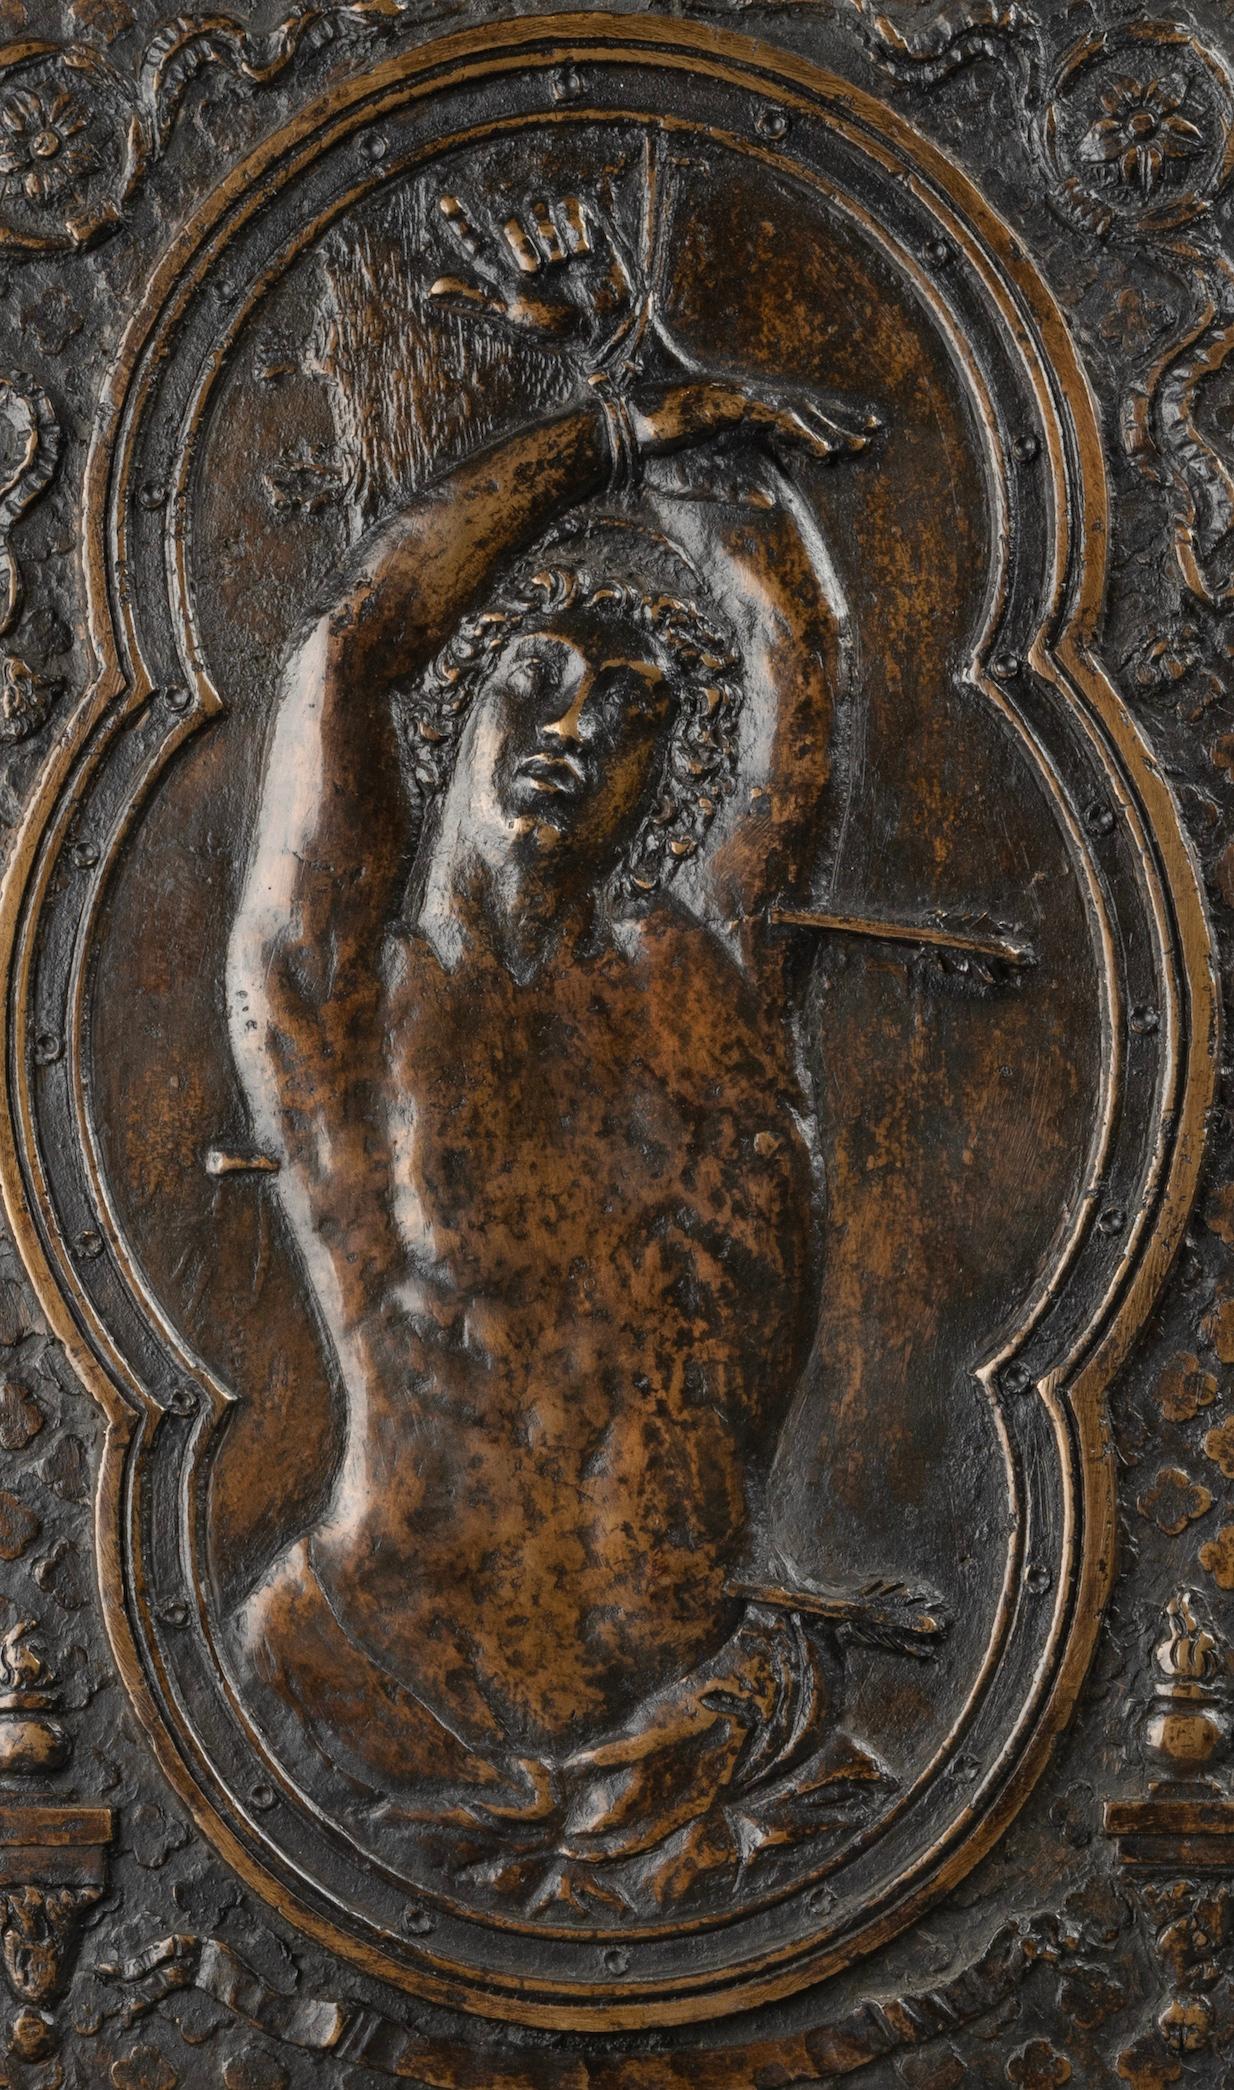 Grande plaque en bronze coulé et ciselé
Saint Sébastien d'après le modèle de Guido RENIS (Musée du Capitole)
Rome, XVIIe siècle

Grande plaque rectangulaire en bronze représentant le martyre de saint Sébastien dans un cadre quadrilobe. Le fond de la